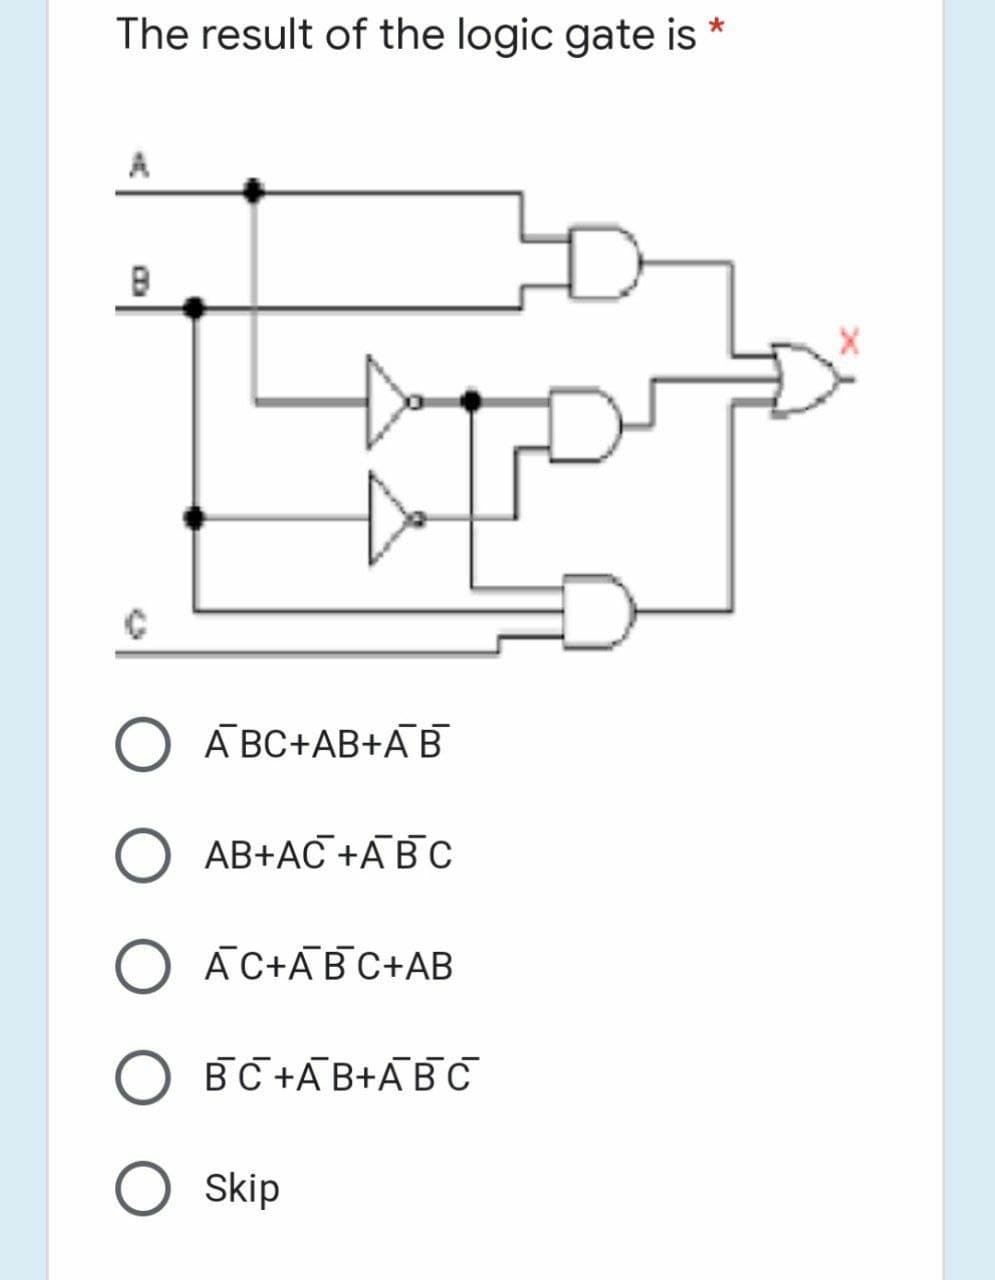 The result of the logic gate is
O A BC+AB+AB
O AB+AC +ABC
O ĀC+ABC+AB
O BC +AB+ABC
Skip
COA
